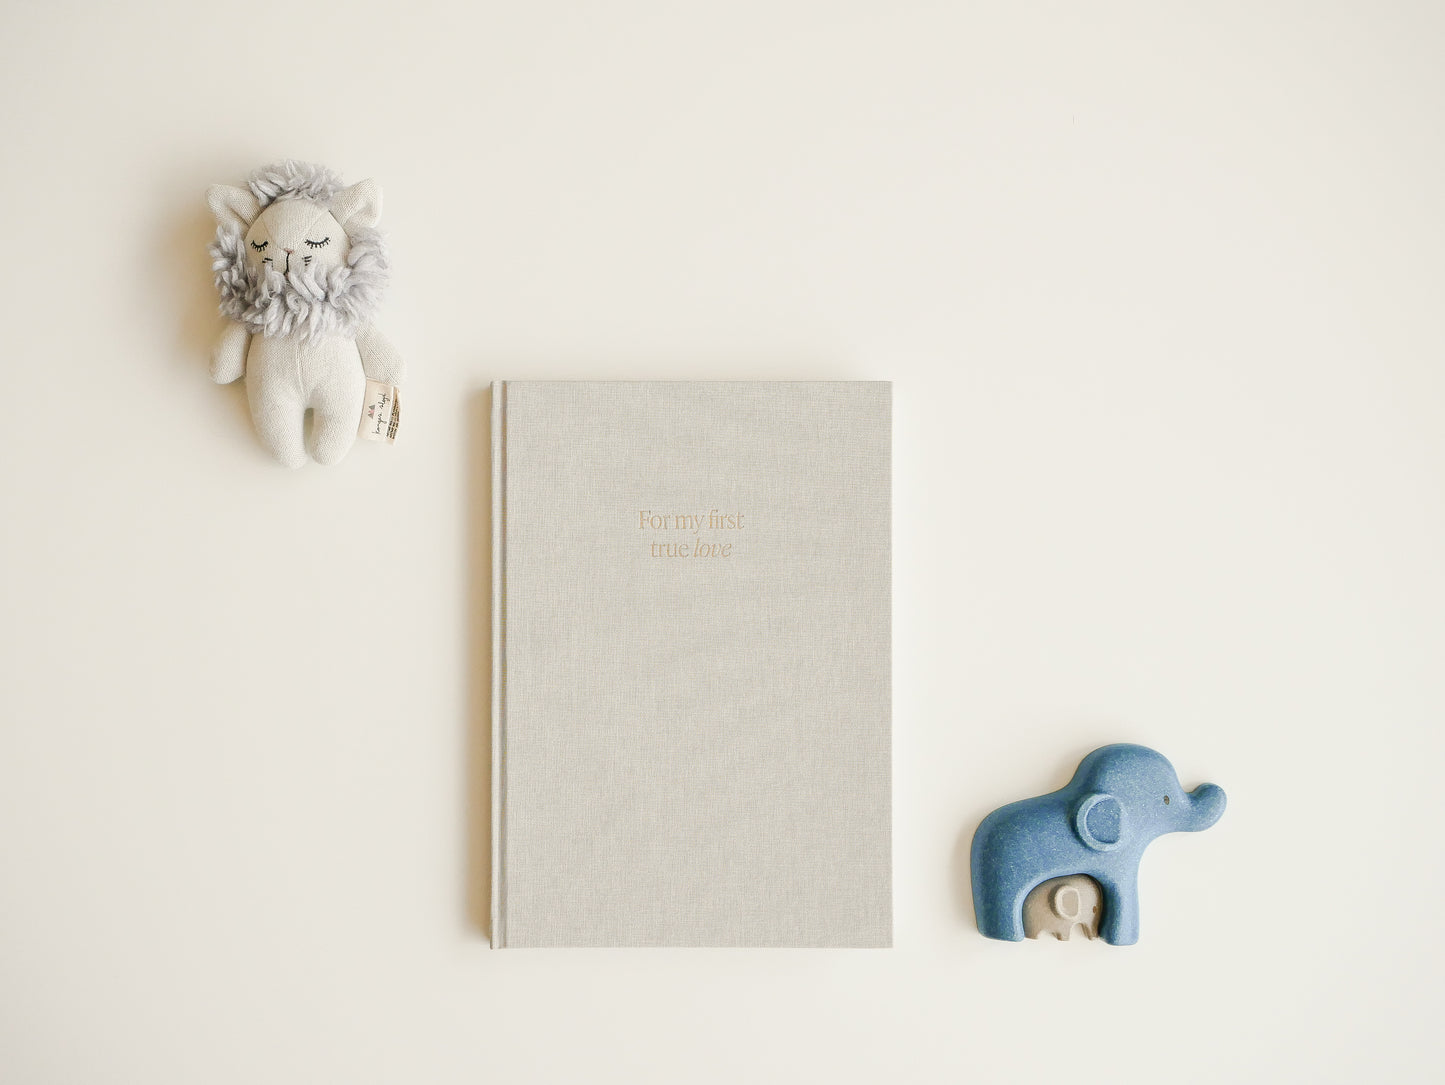 Ein beiges Hardcover Buch mit Leineneinband liegt auf einem weißen Tisch, daneben sind eine hellblaue Löwenrassel und zwei kleine Spielzeugelefanten in dunkelblau und beige dekoriert.